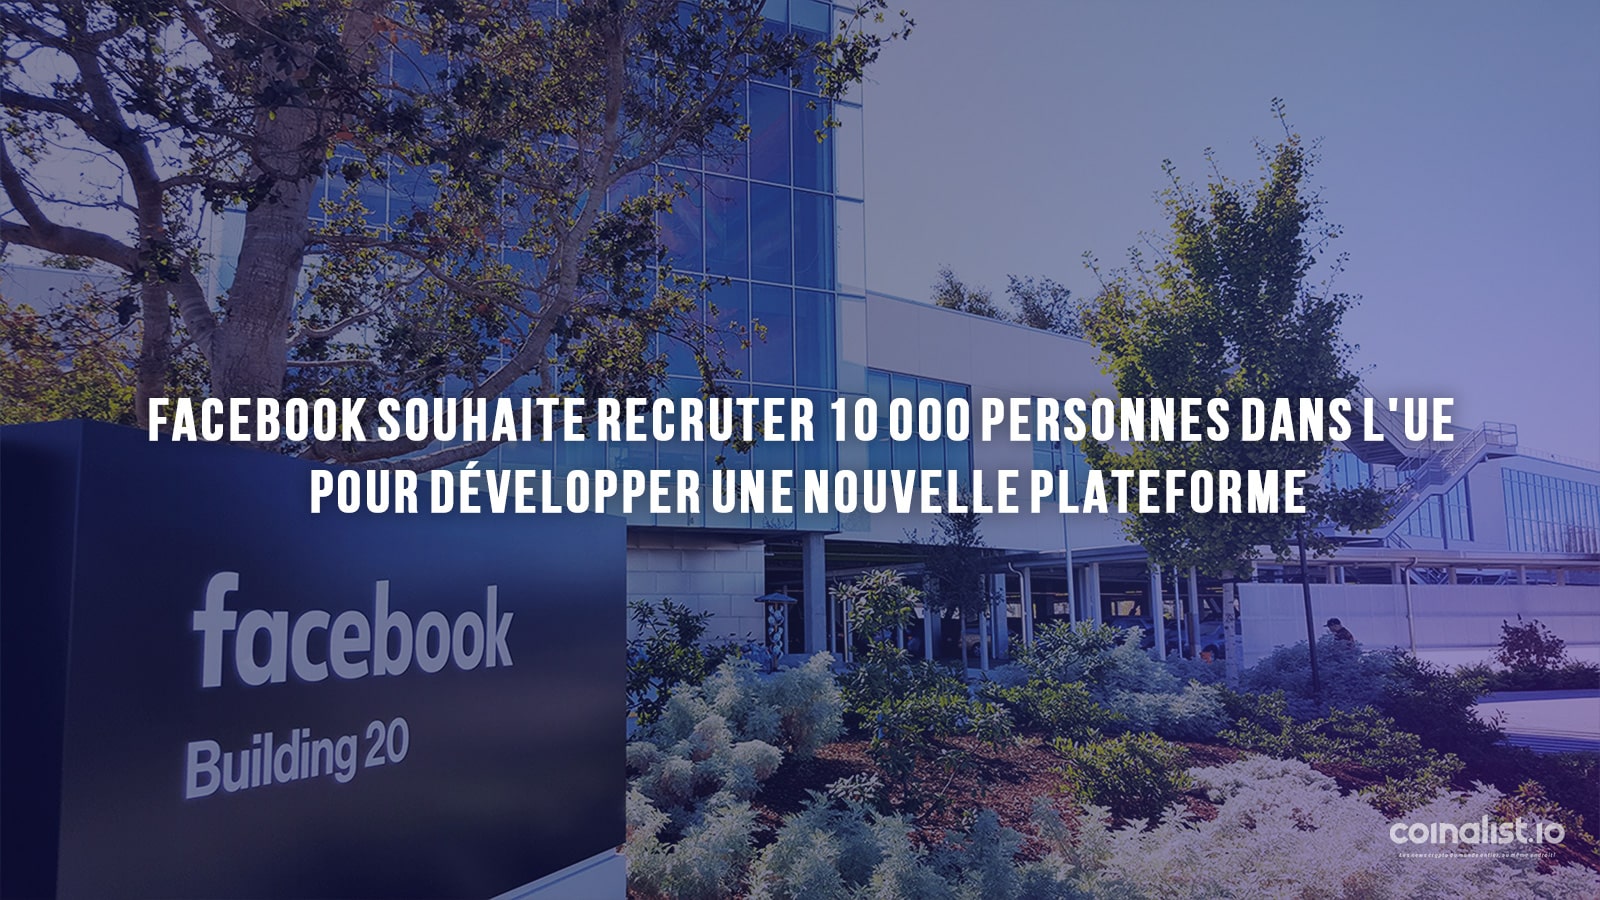 Facebook Souhaite Recruter 10 000 Personnes Dans L'Ue Pour Développer Une Nouvelle Plateforme - Quartier Général